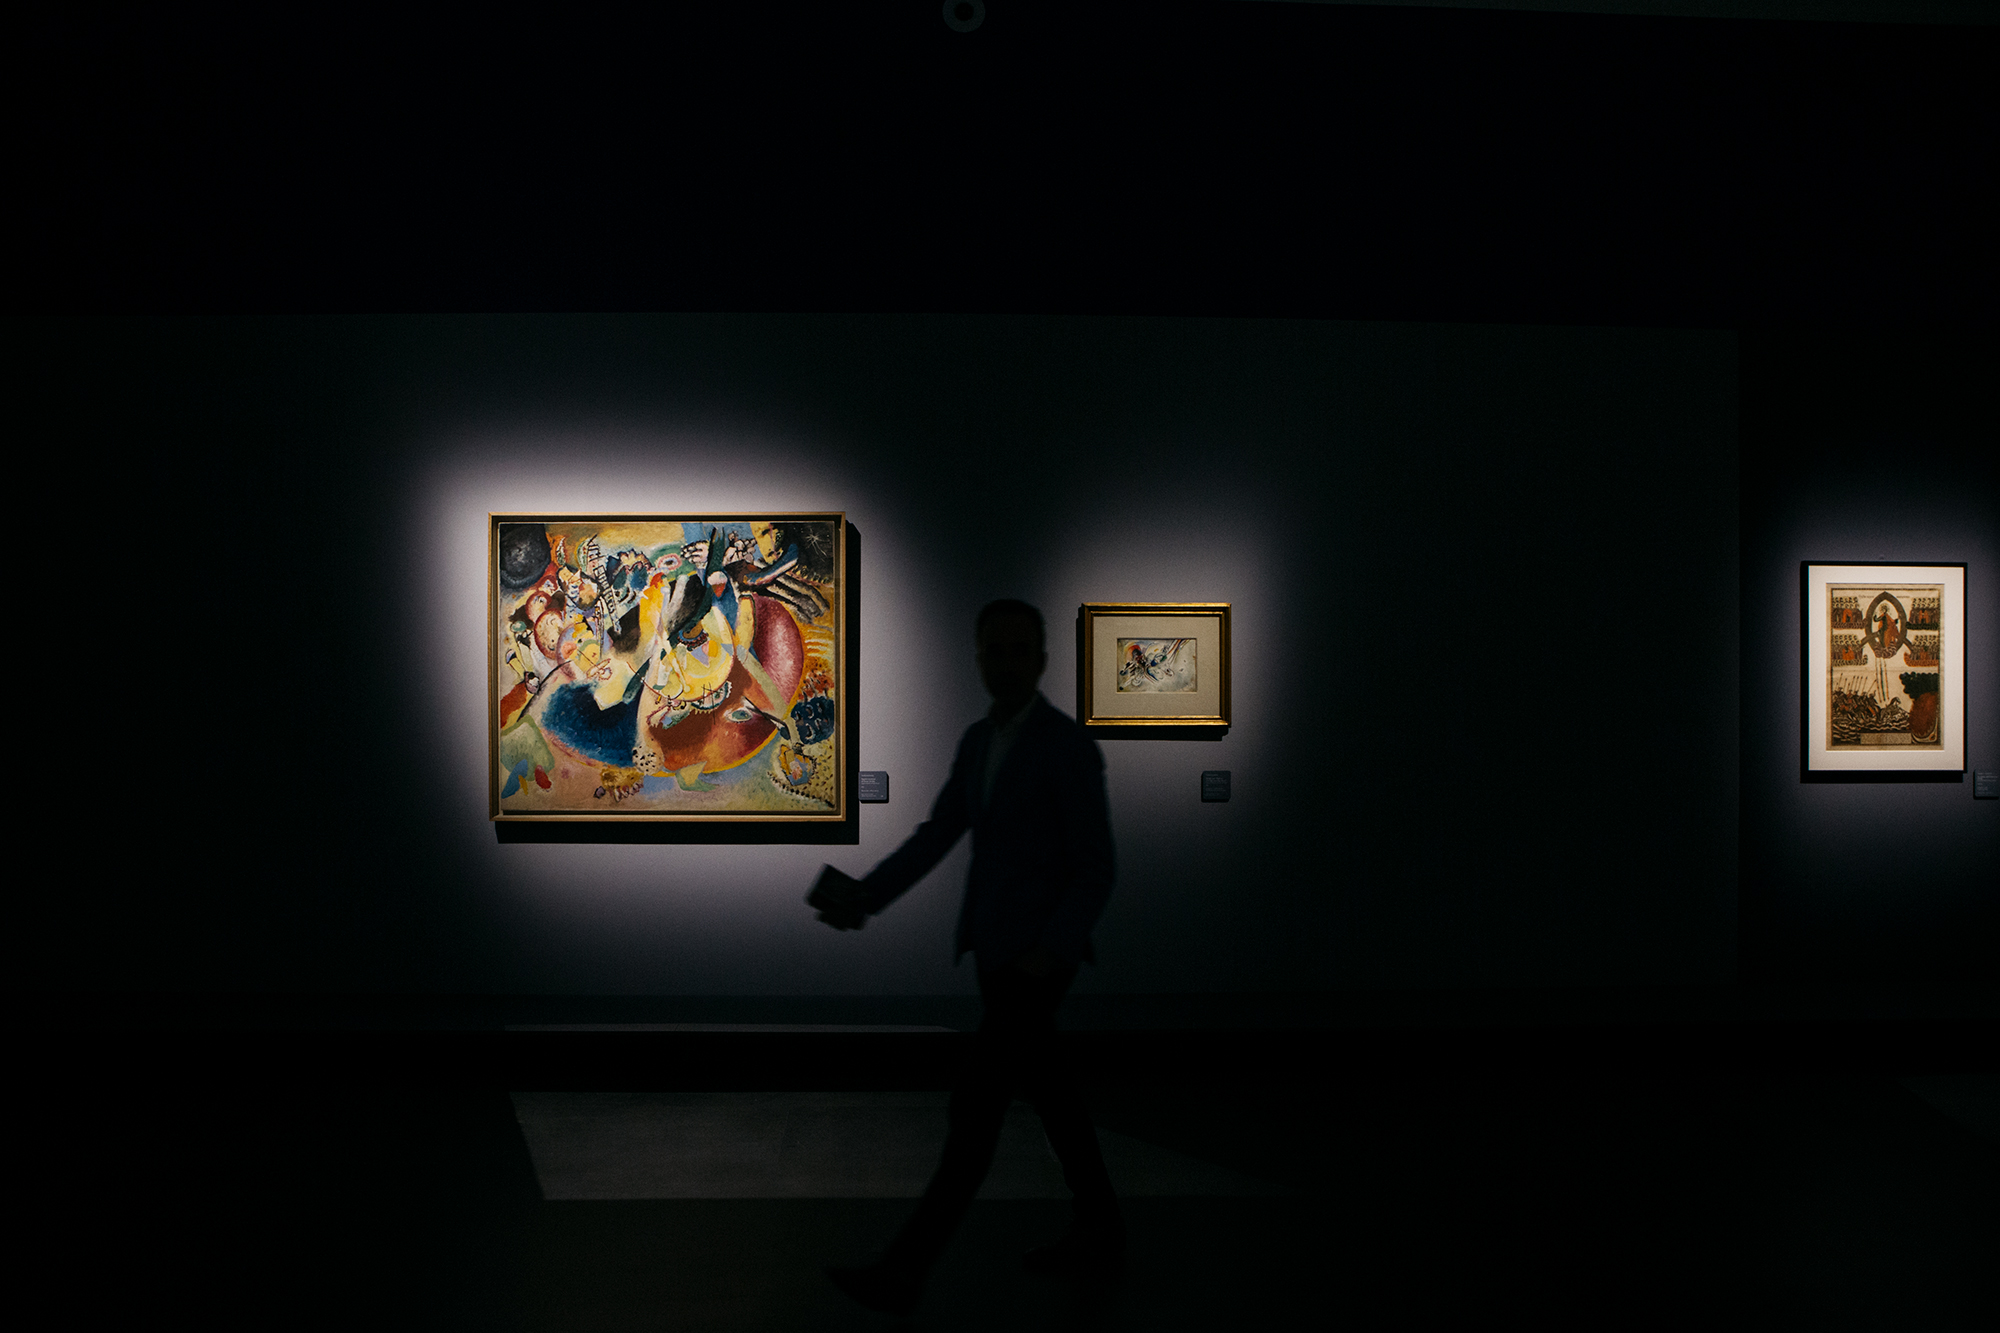 Il primo lavoro astratto nell’opera creativa di Vasilij Kandinskij, e in generale la prima astrazione al mondo, è considerato "Quadro con cerchio", dipinto nel 1911 e oggi conservato al Museo Nazionale della Georgia, a Tbilisi